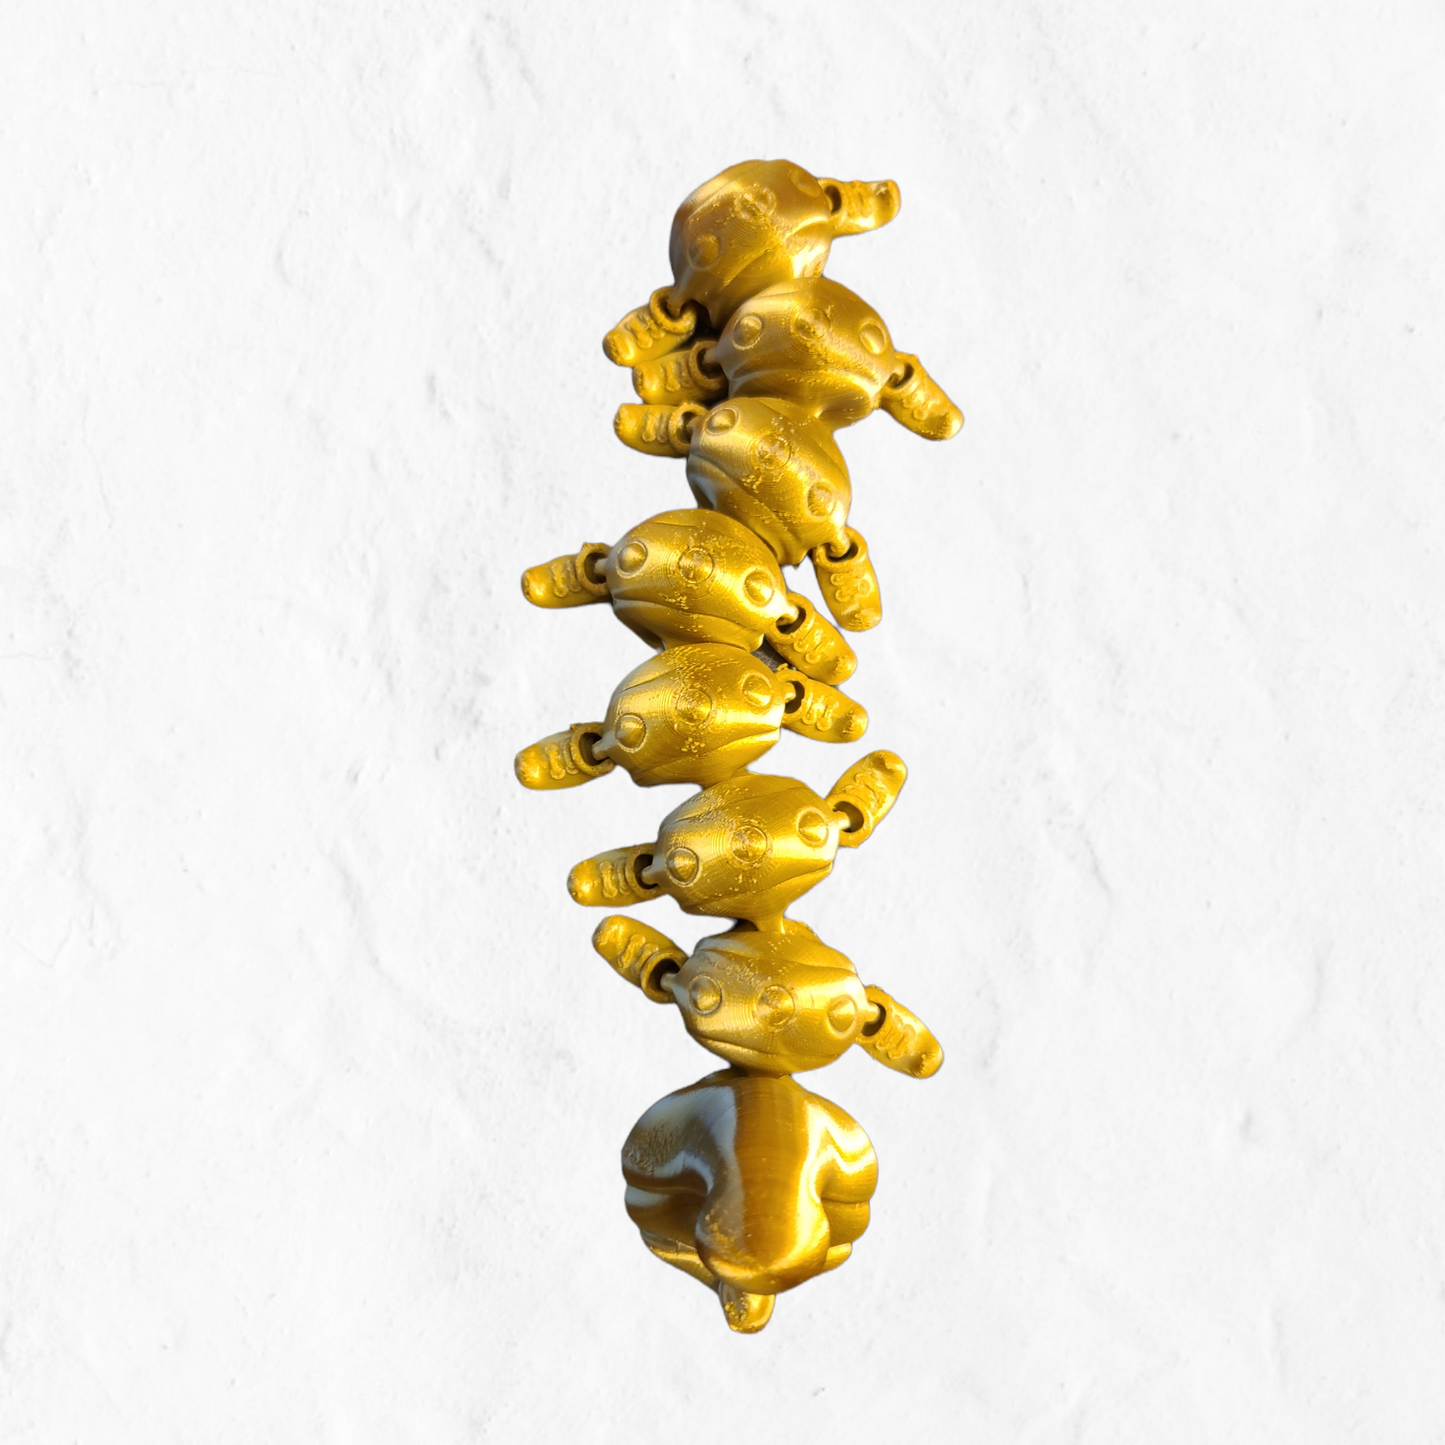 3D Printed Flexi Caterpillar